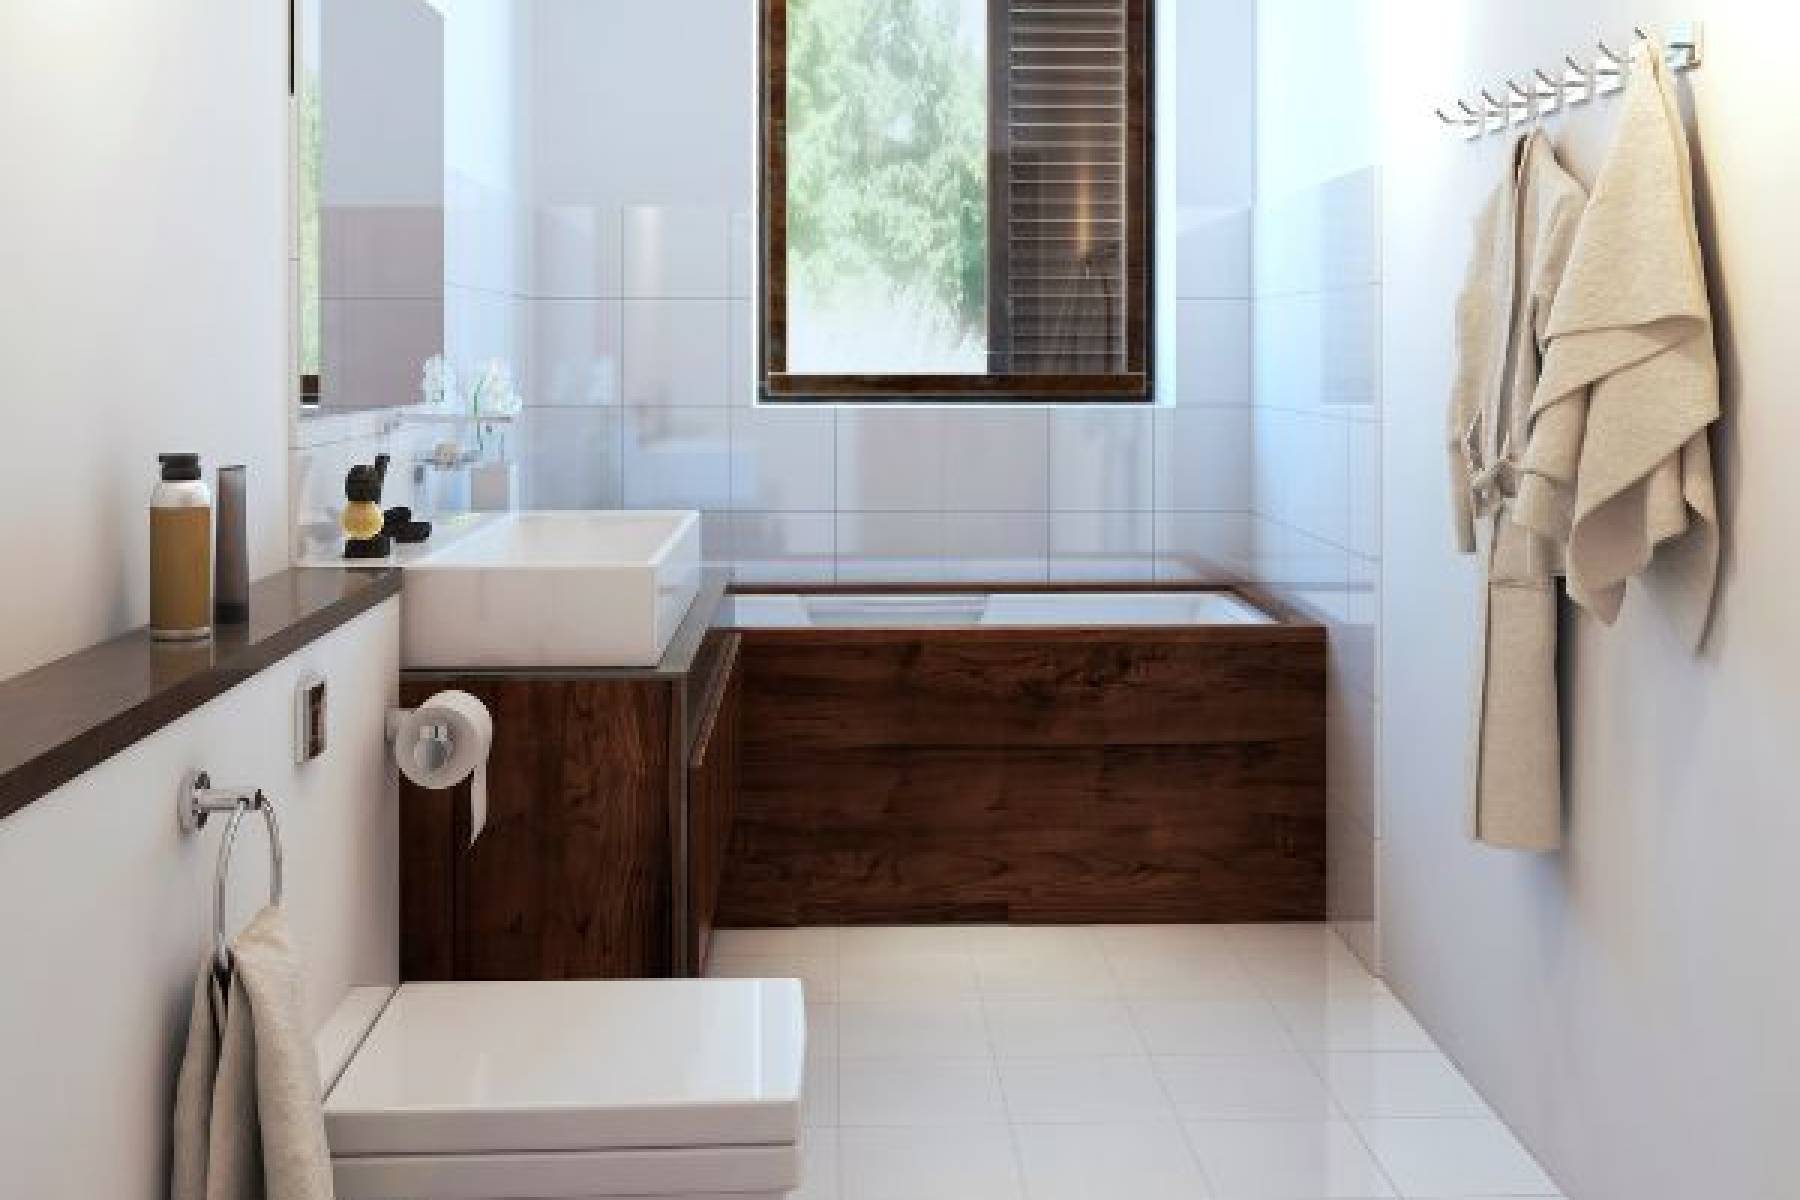 Luksusowe i funkcjonalne rozwiązania - Zestaw mebli łazienkowych, które odmienią twoją przestrzeń